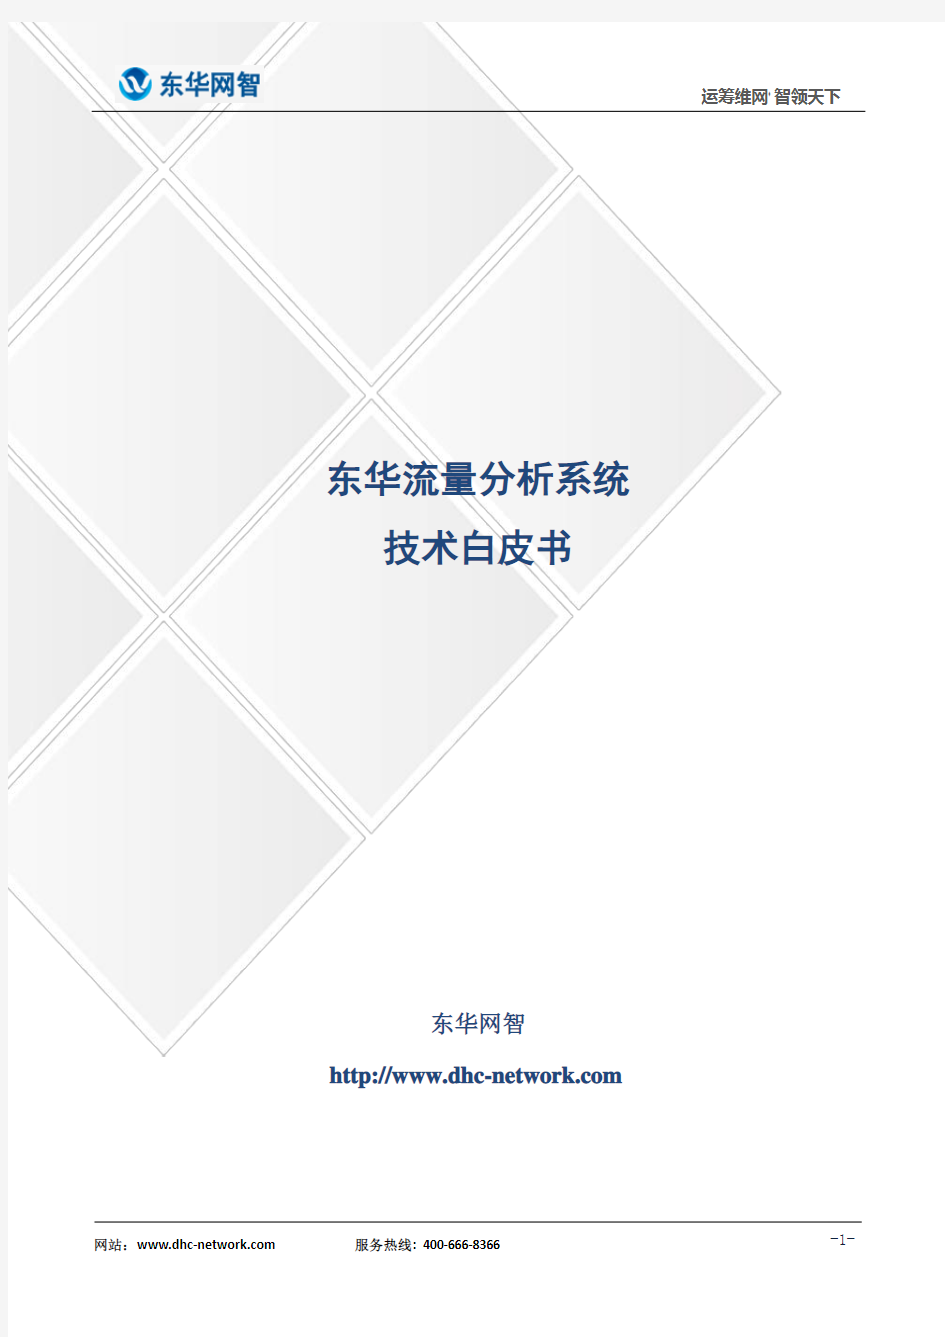 东华流量分析系统技术白皮书v3.0